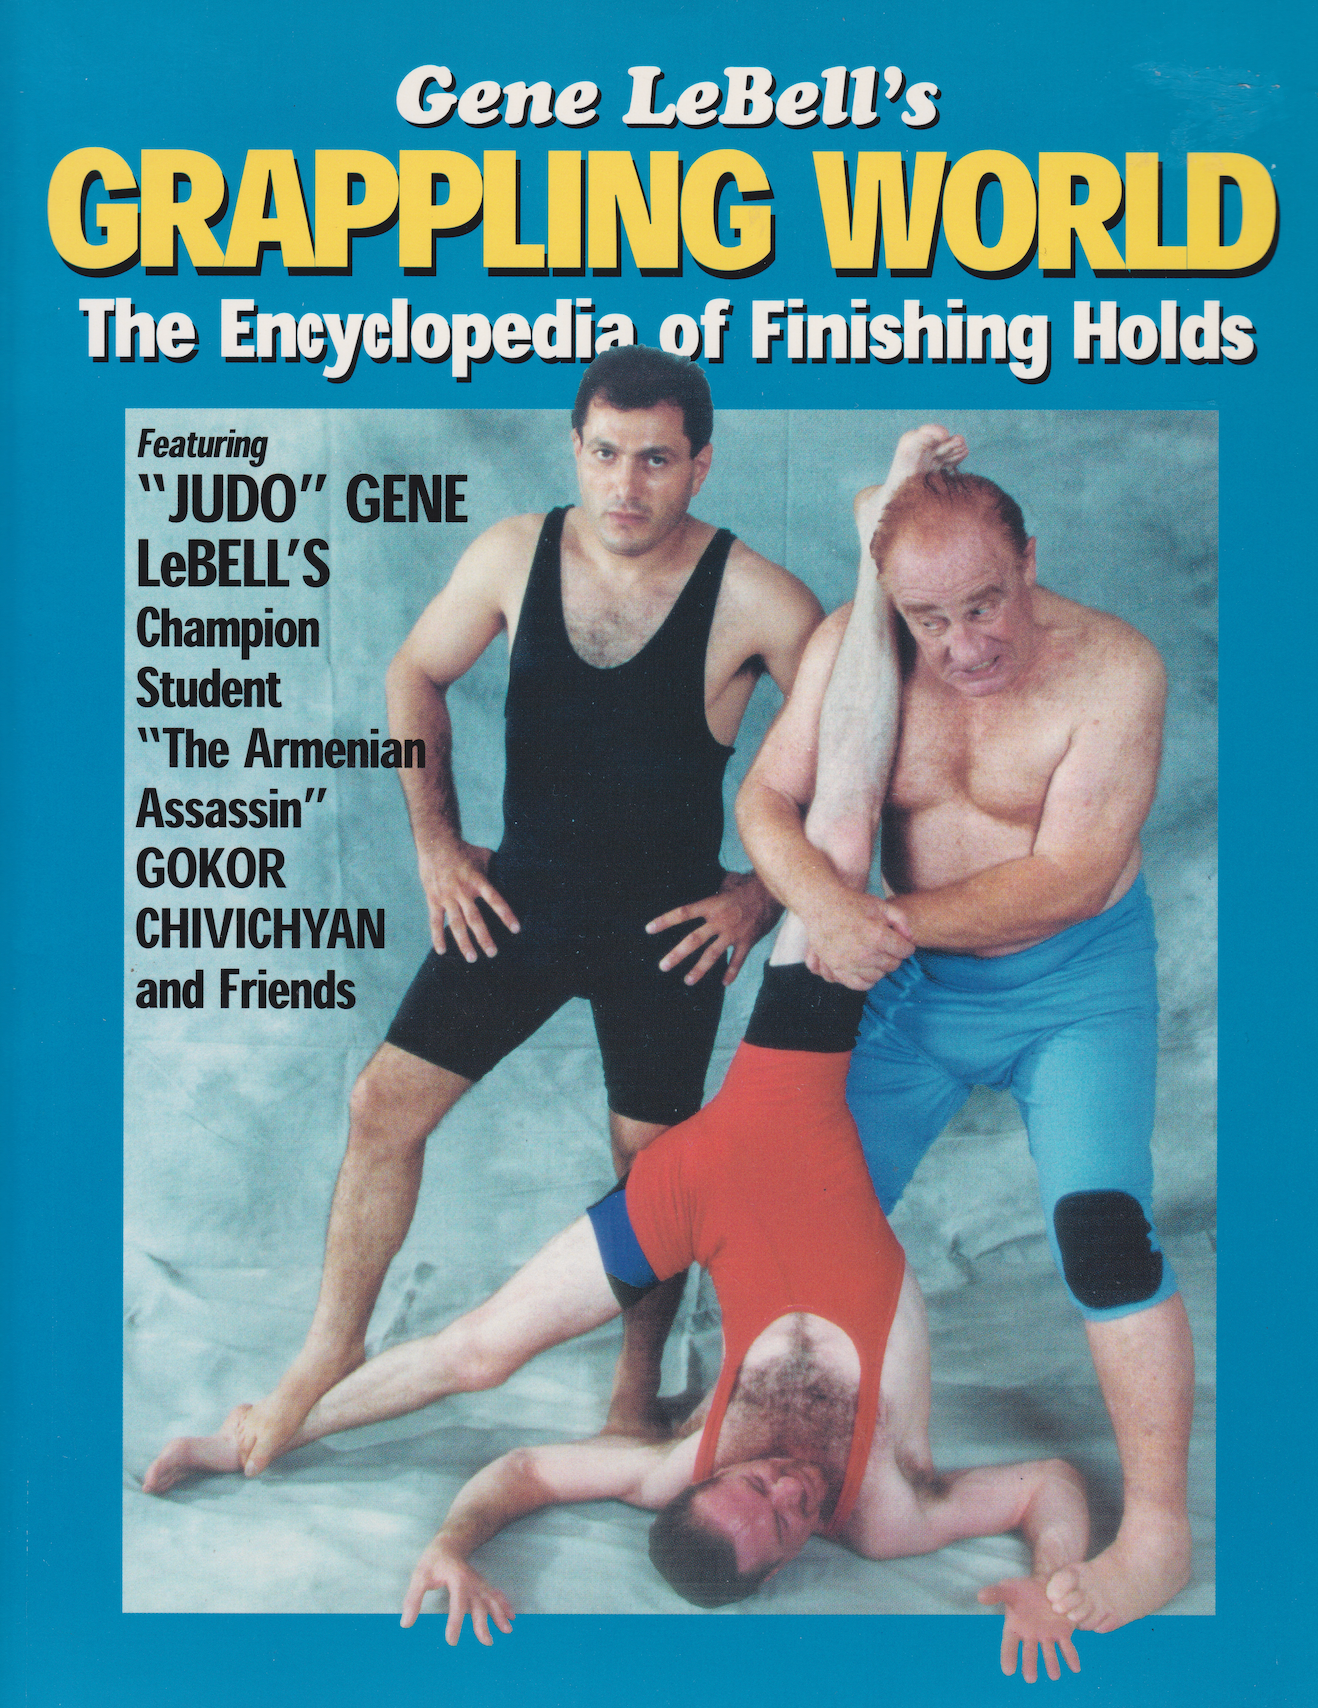 Grappling World de Gene LeBell - La enciclopedia del libro de retenciones finales (1.a edición) (usado) 